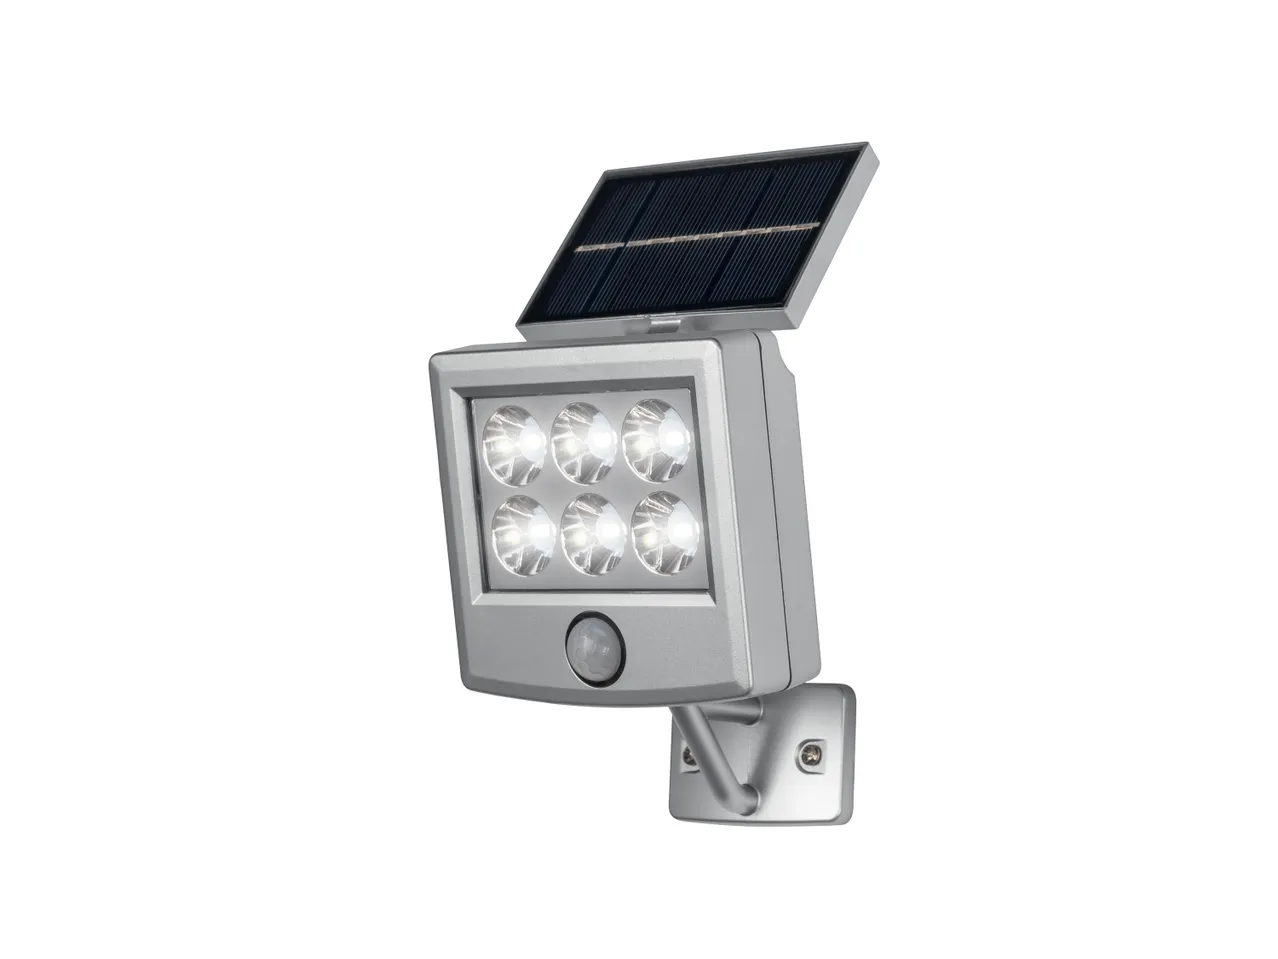 Faro LED ad energia solare con sensore , prezzo 7.99 EUR 
Faro LED ad energia solare ...